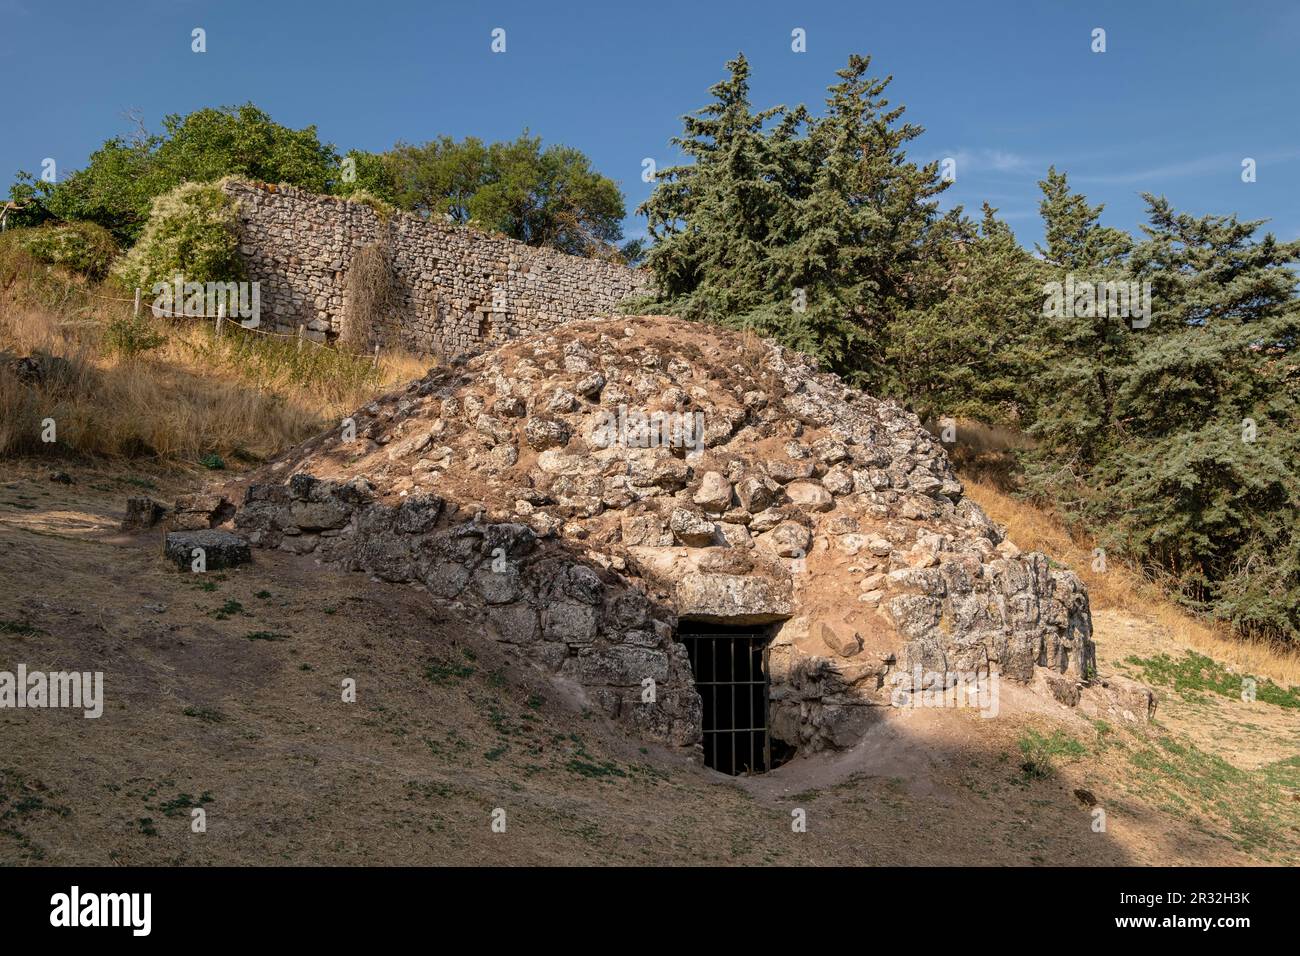 nevero medieval de época árabe, Medinaceli, Soria, comunidad autónoma de Castilla y León, Spain, Europe. Stock Photo